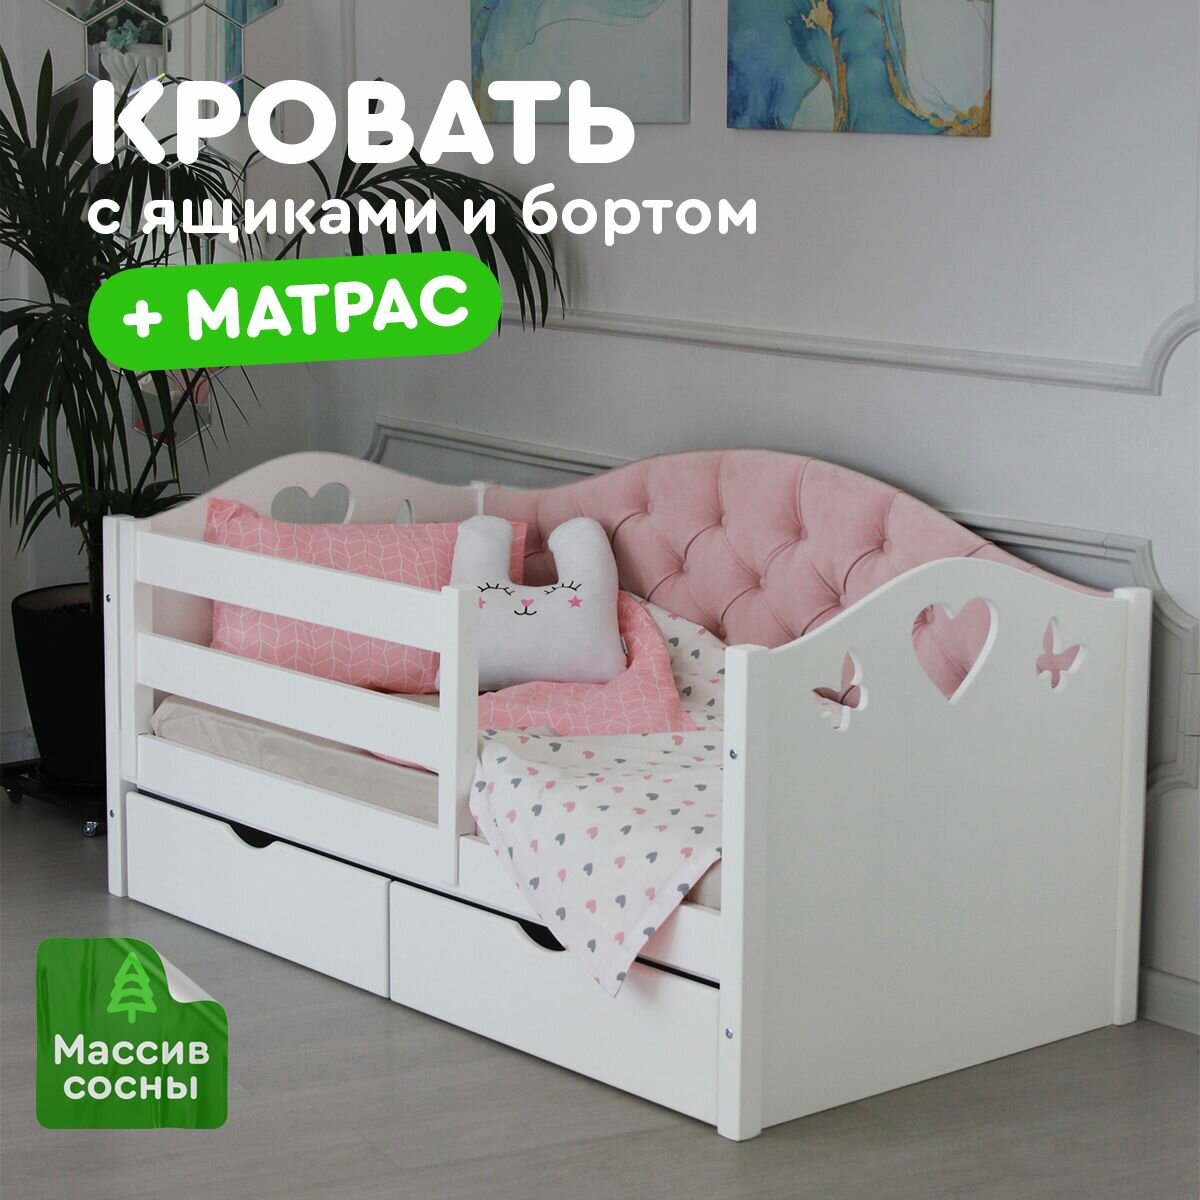 Кровать детская с мягкой спинкой 160х80 см + матрас, каретная фигурная розовая, с ящиками, для детей